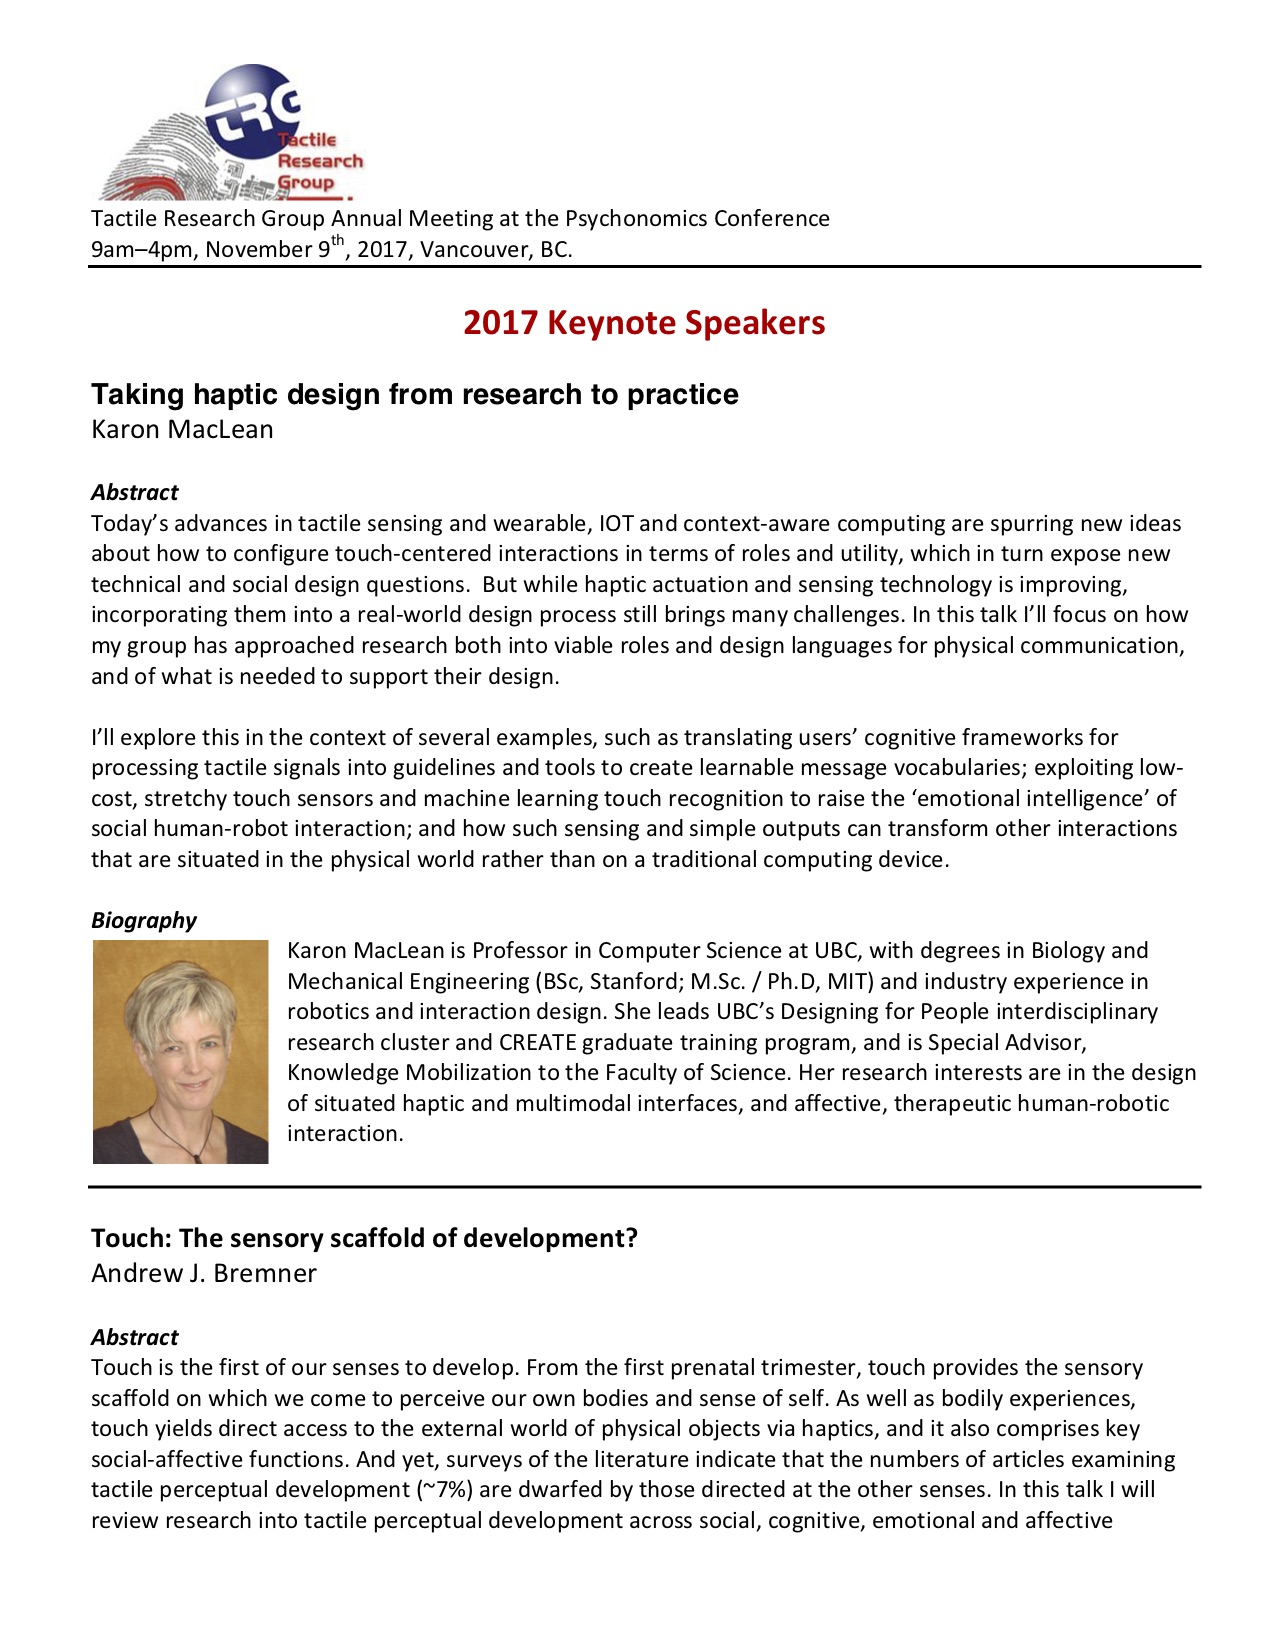 2017 Keynote Speakers 1 of 2